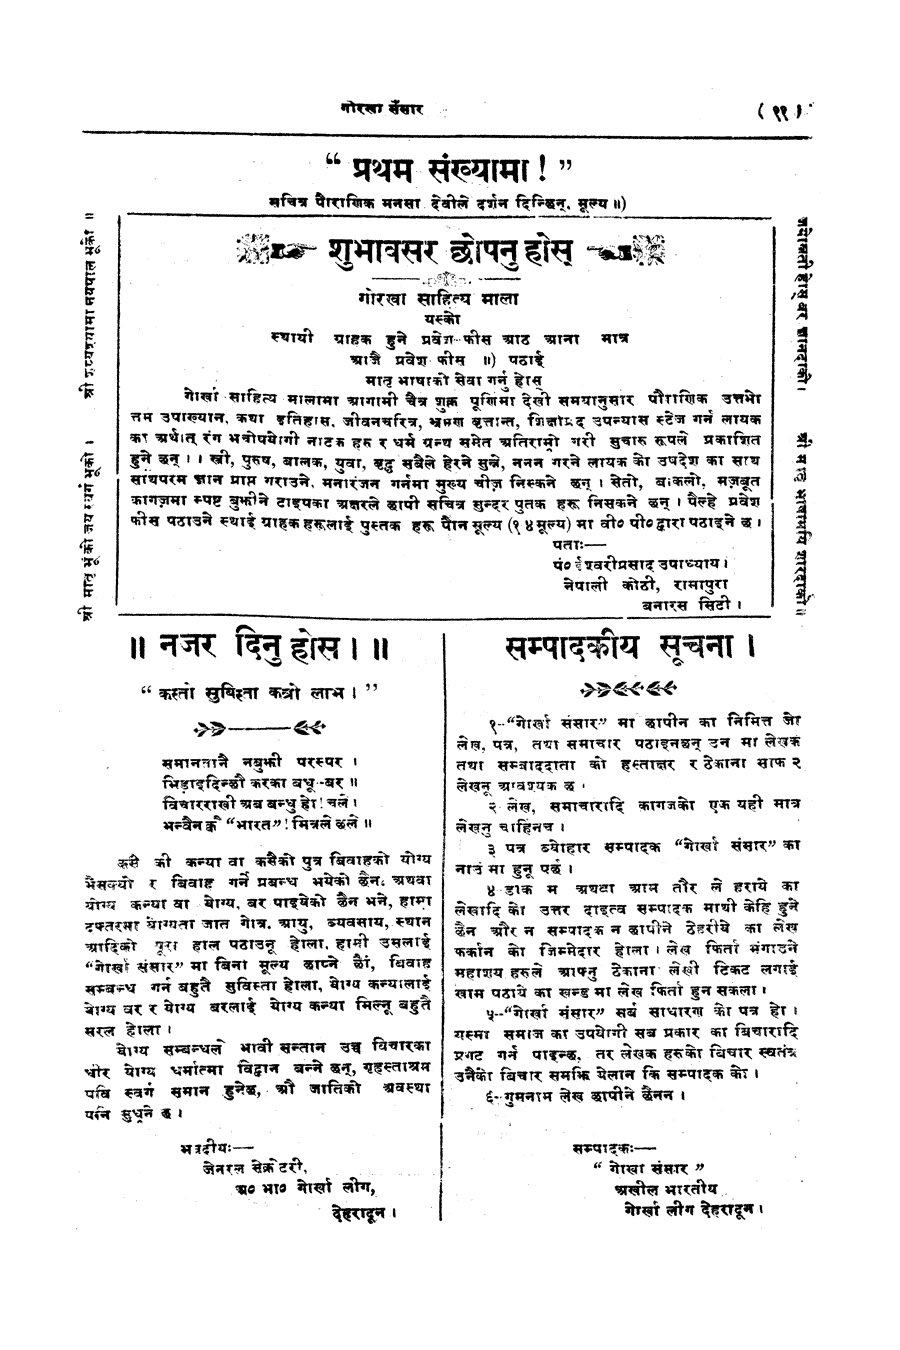 Gorkha Sansar, 27 April 1928, page 11